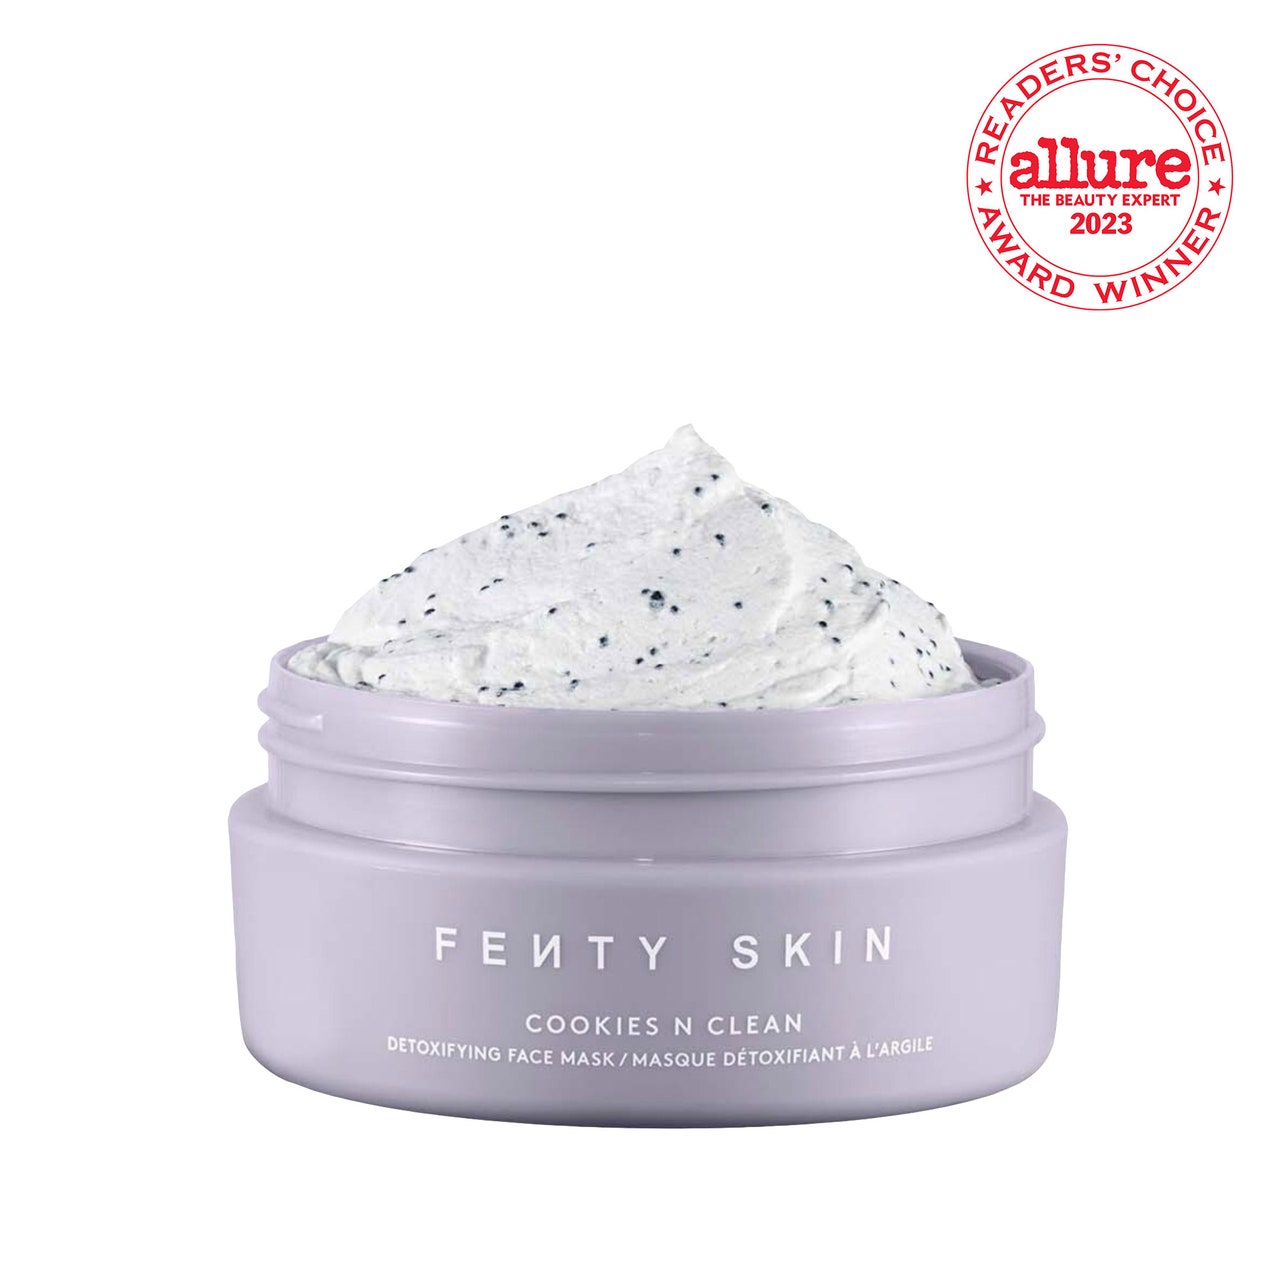 Fenty Skin Cookies N Clean Whipped Clay Pore Detox Face Mask Öffnen Sie ein violettes Glas mit einer weiß gesprenkelten Maske auf weißem Hintergrund mit einem weißen und roten RCA-Siegel auf weißem Hintergrund